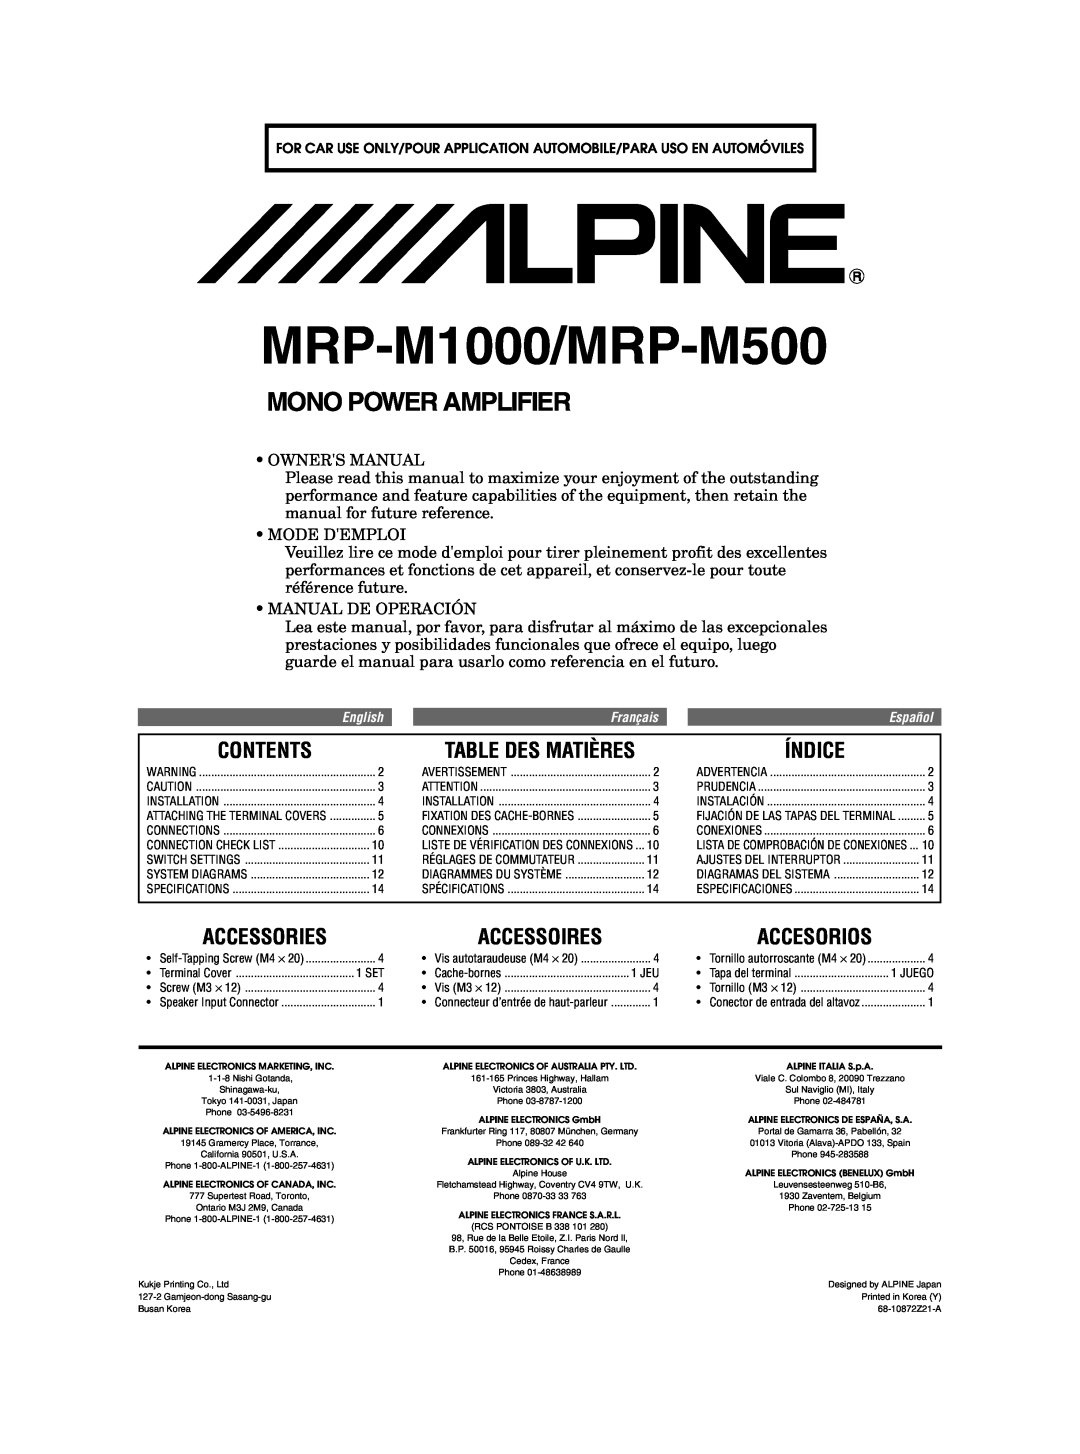 Alpine owner manual Contents, Índice, Accessories, Accessoires, Accesorios, MRD-M500/MRD-M300, Mono Power Amplifier 